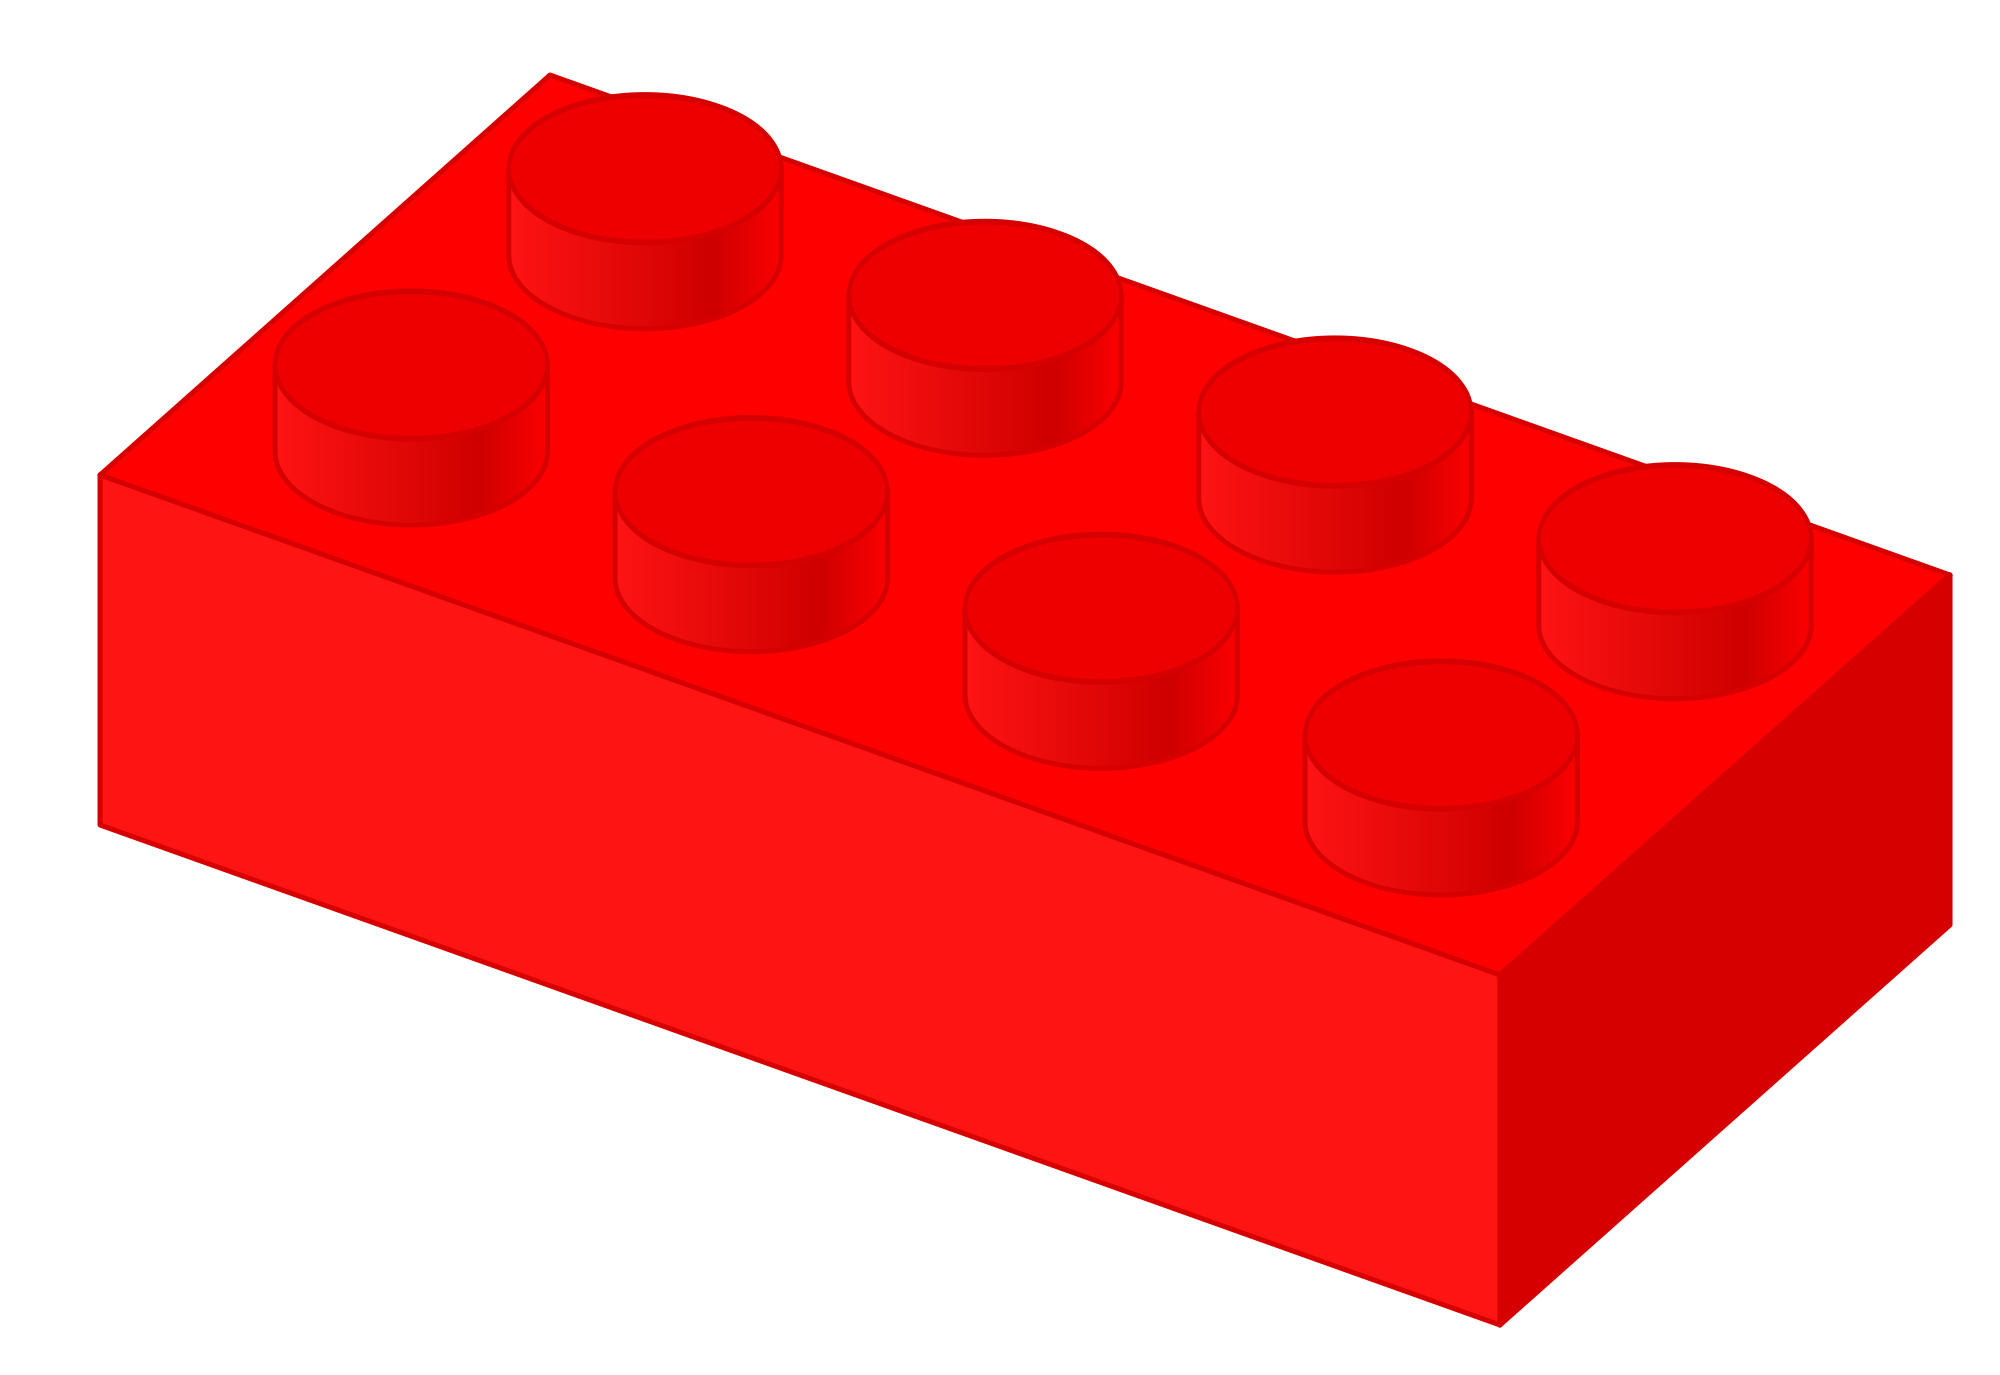 Download Lego Clipart Svg Lego Svg Transparent Free For Download On Webstockreview 2020 PSD Mockup Templates